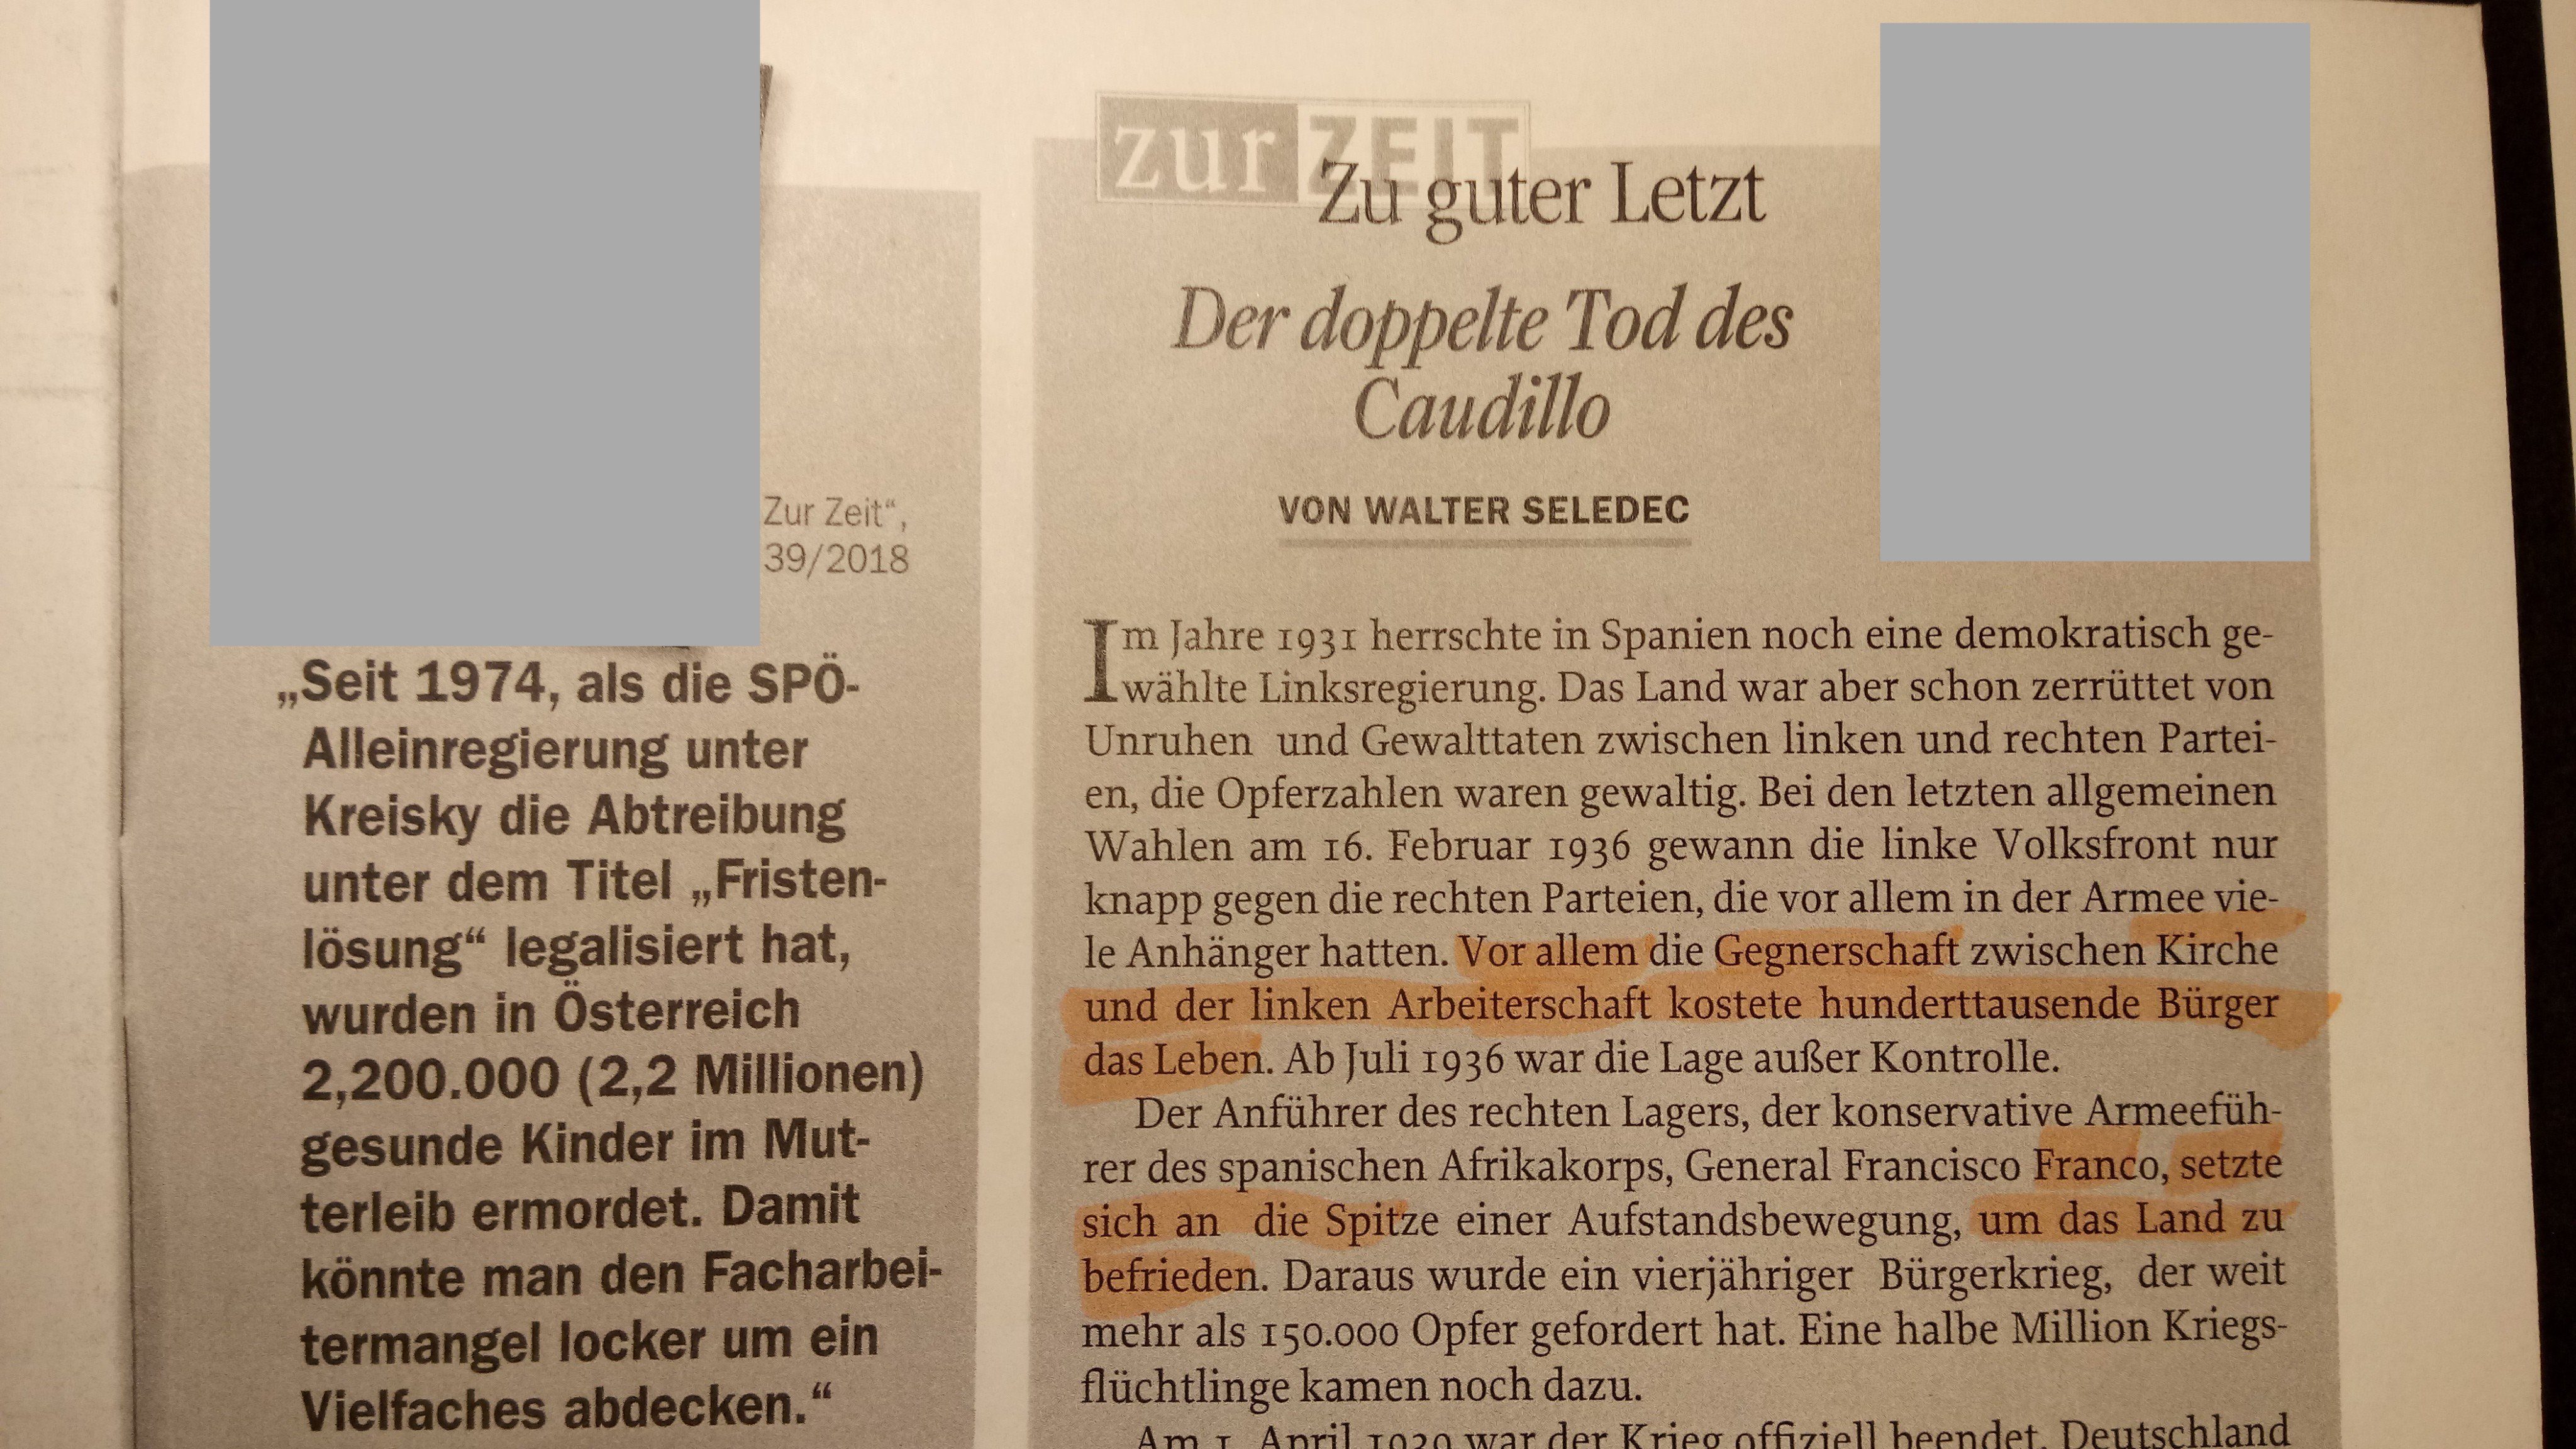 Walter Seledec in "Zur Zeit" Ausgabe 40/18